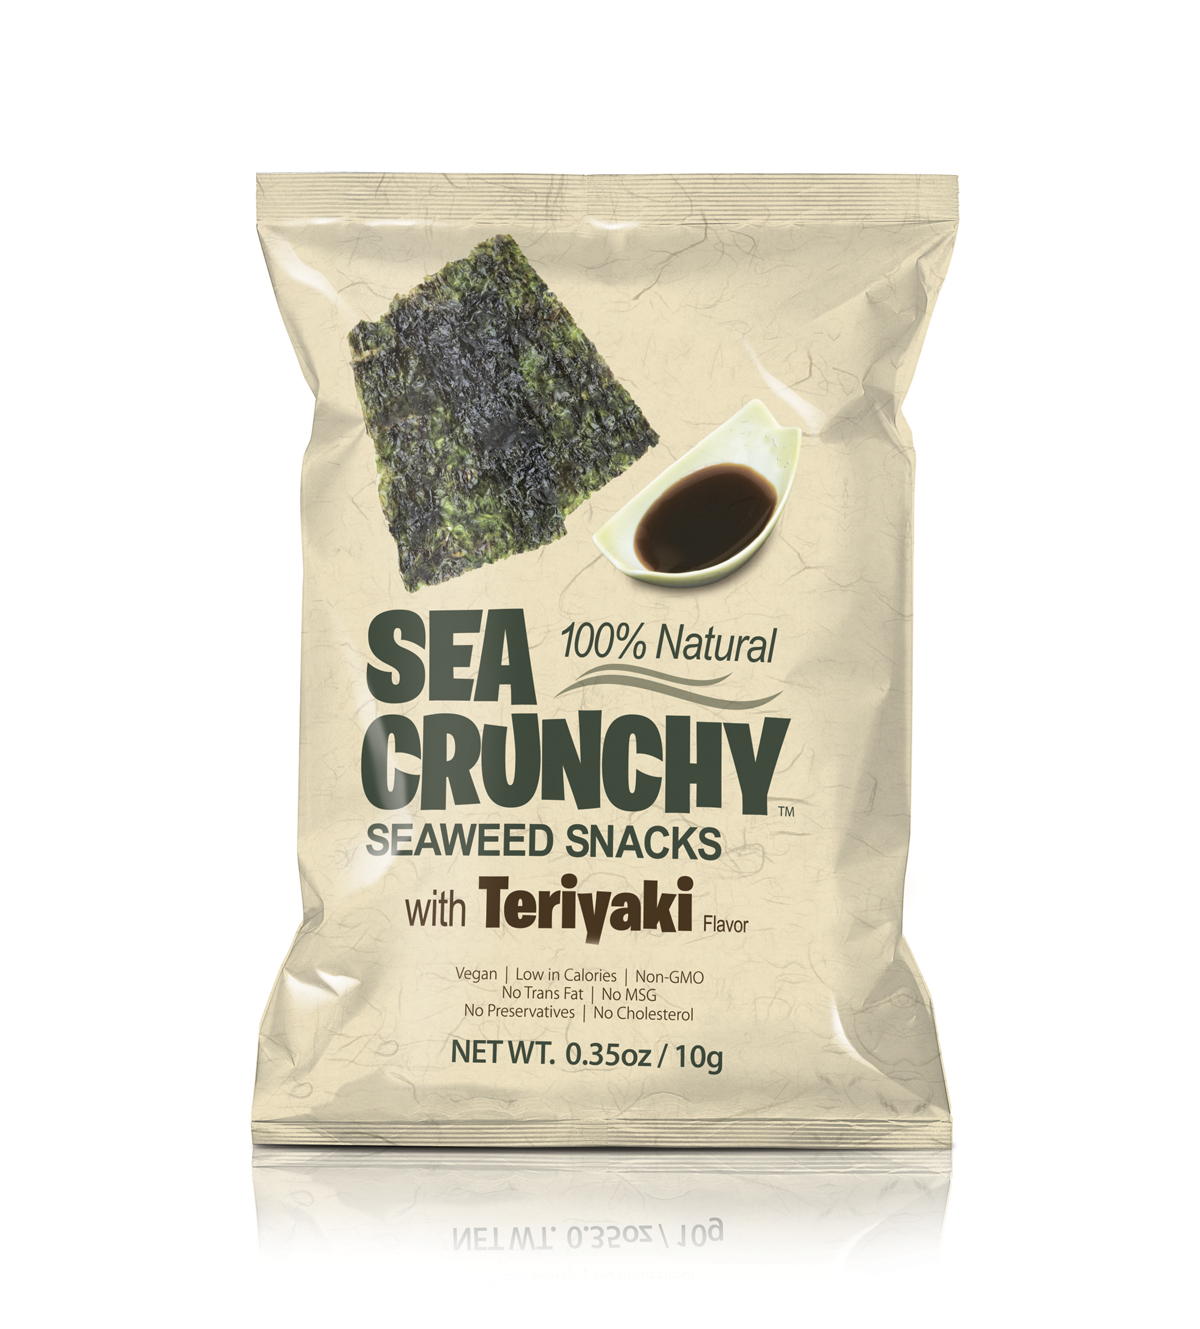 SEA CRUNCHY Seaweed Snacks with teriyaki sauce image.